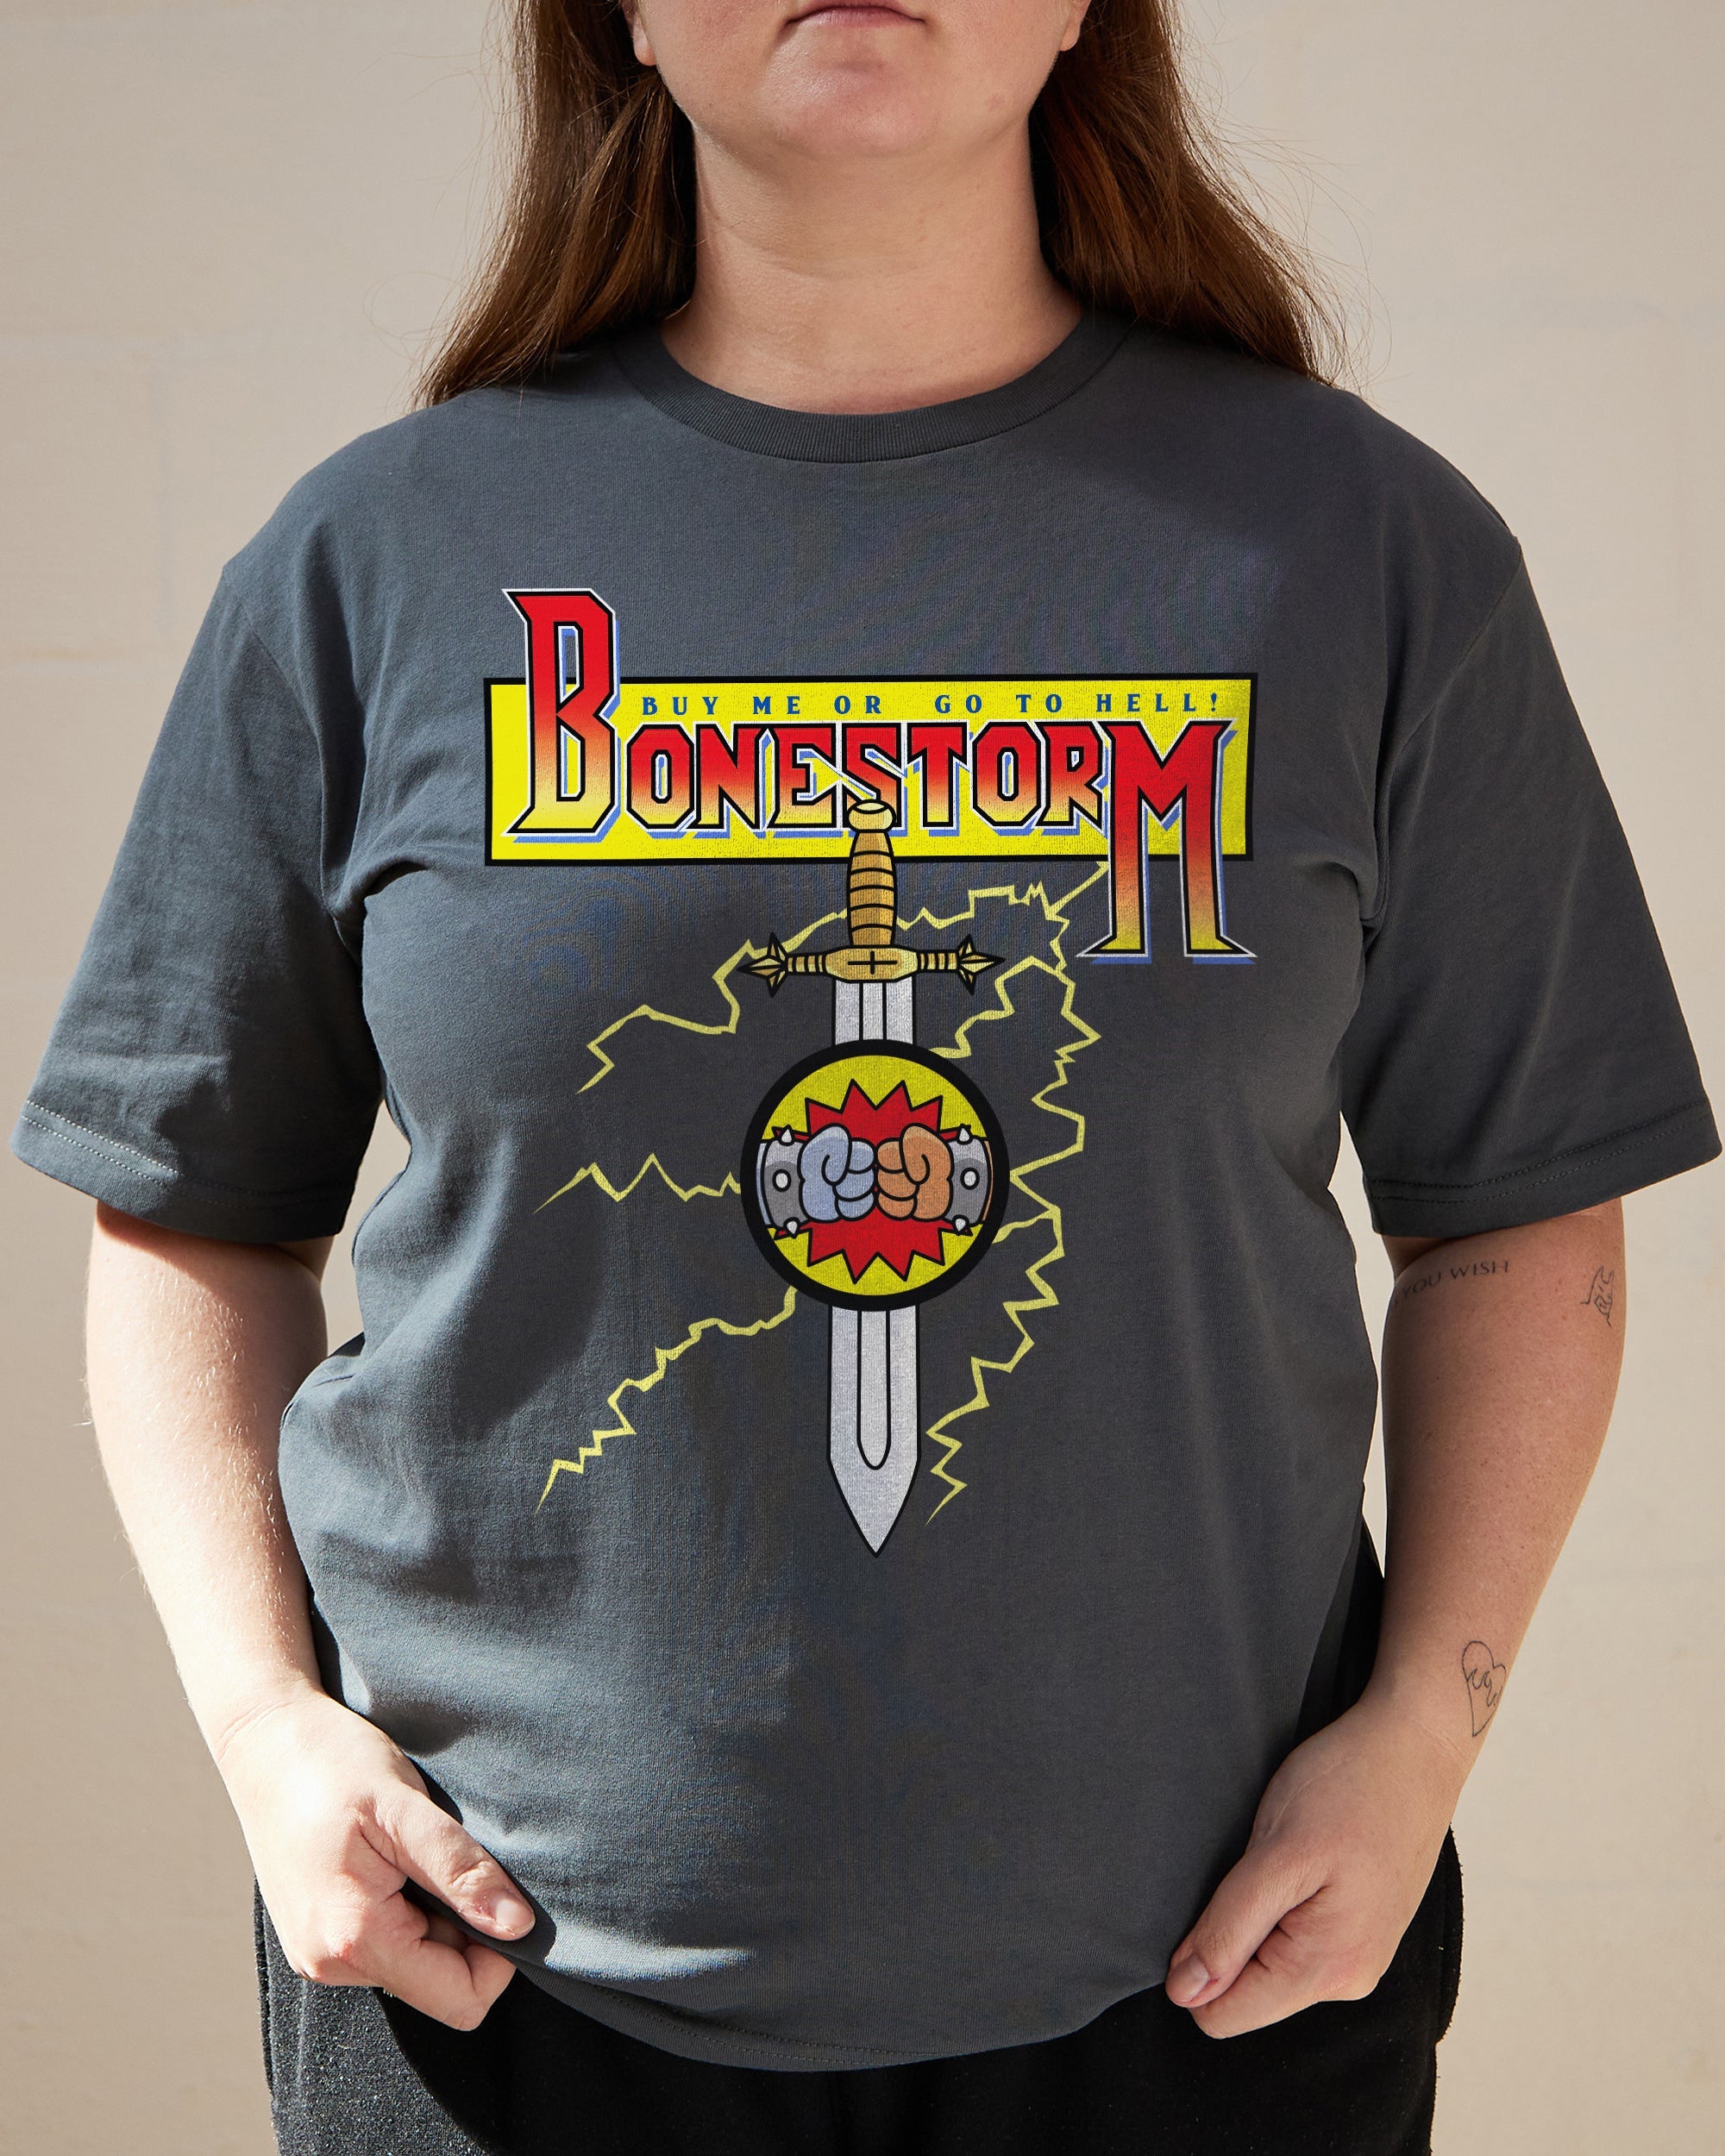 Bonestorm T-Shirt Australia Online Charcoal